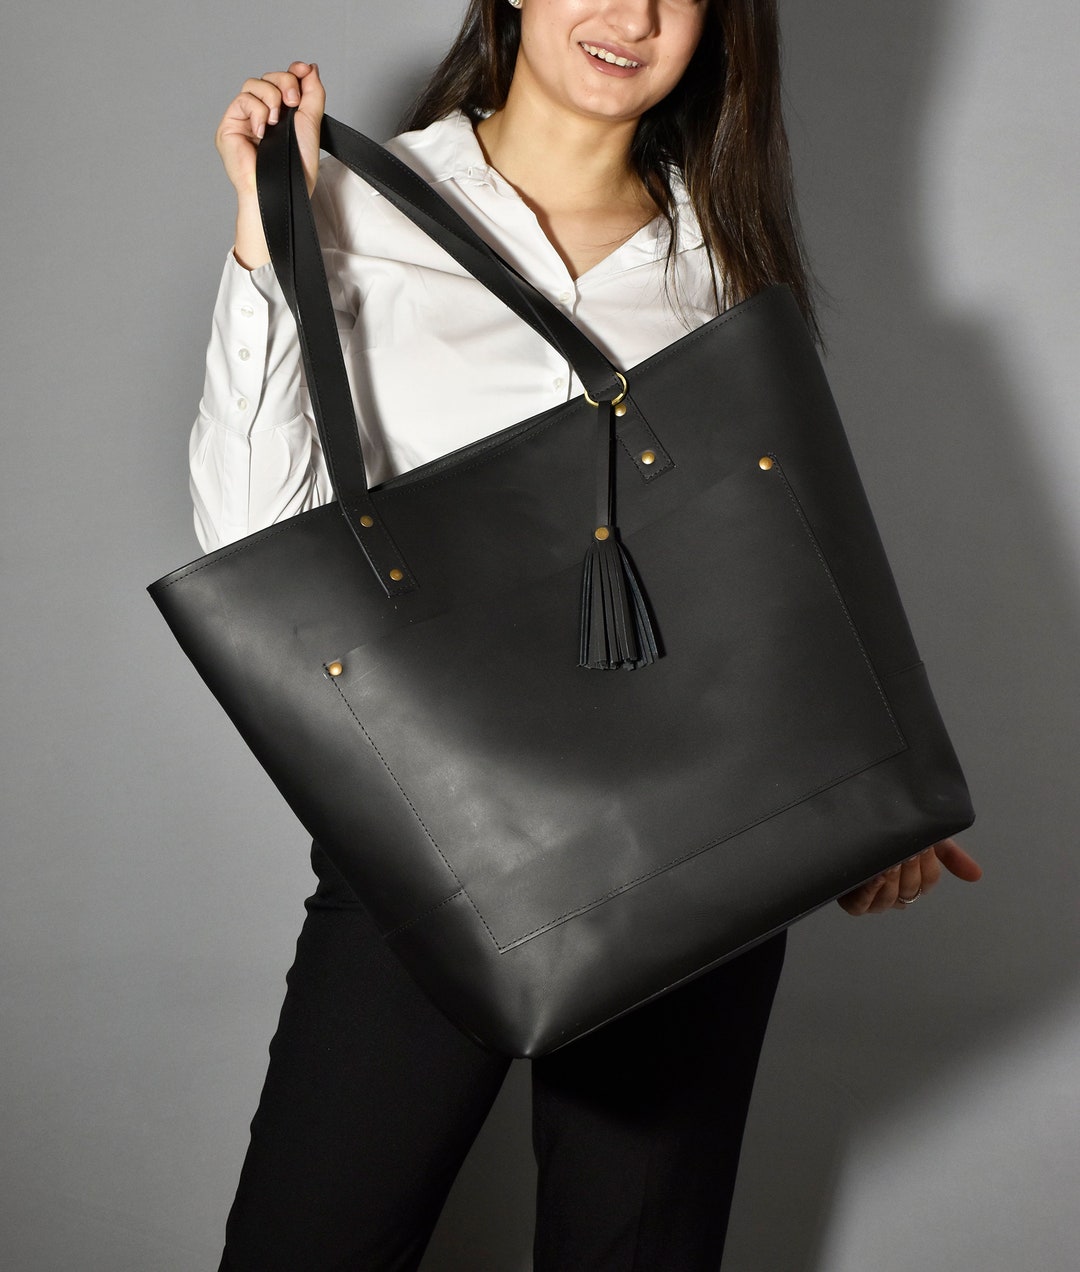 Handmade Leather Tote Bag Purse Shoulder Black SALE - Etsy